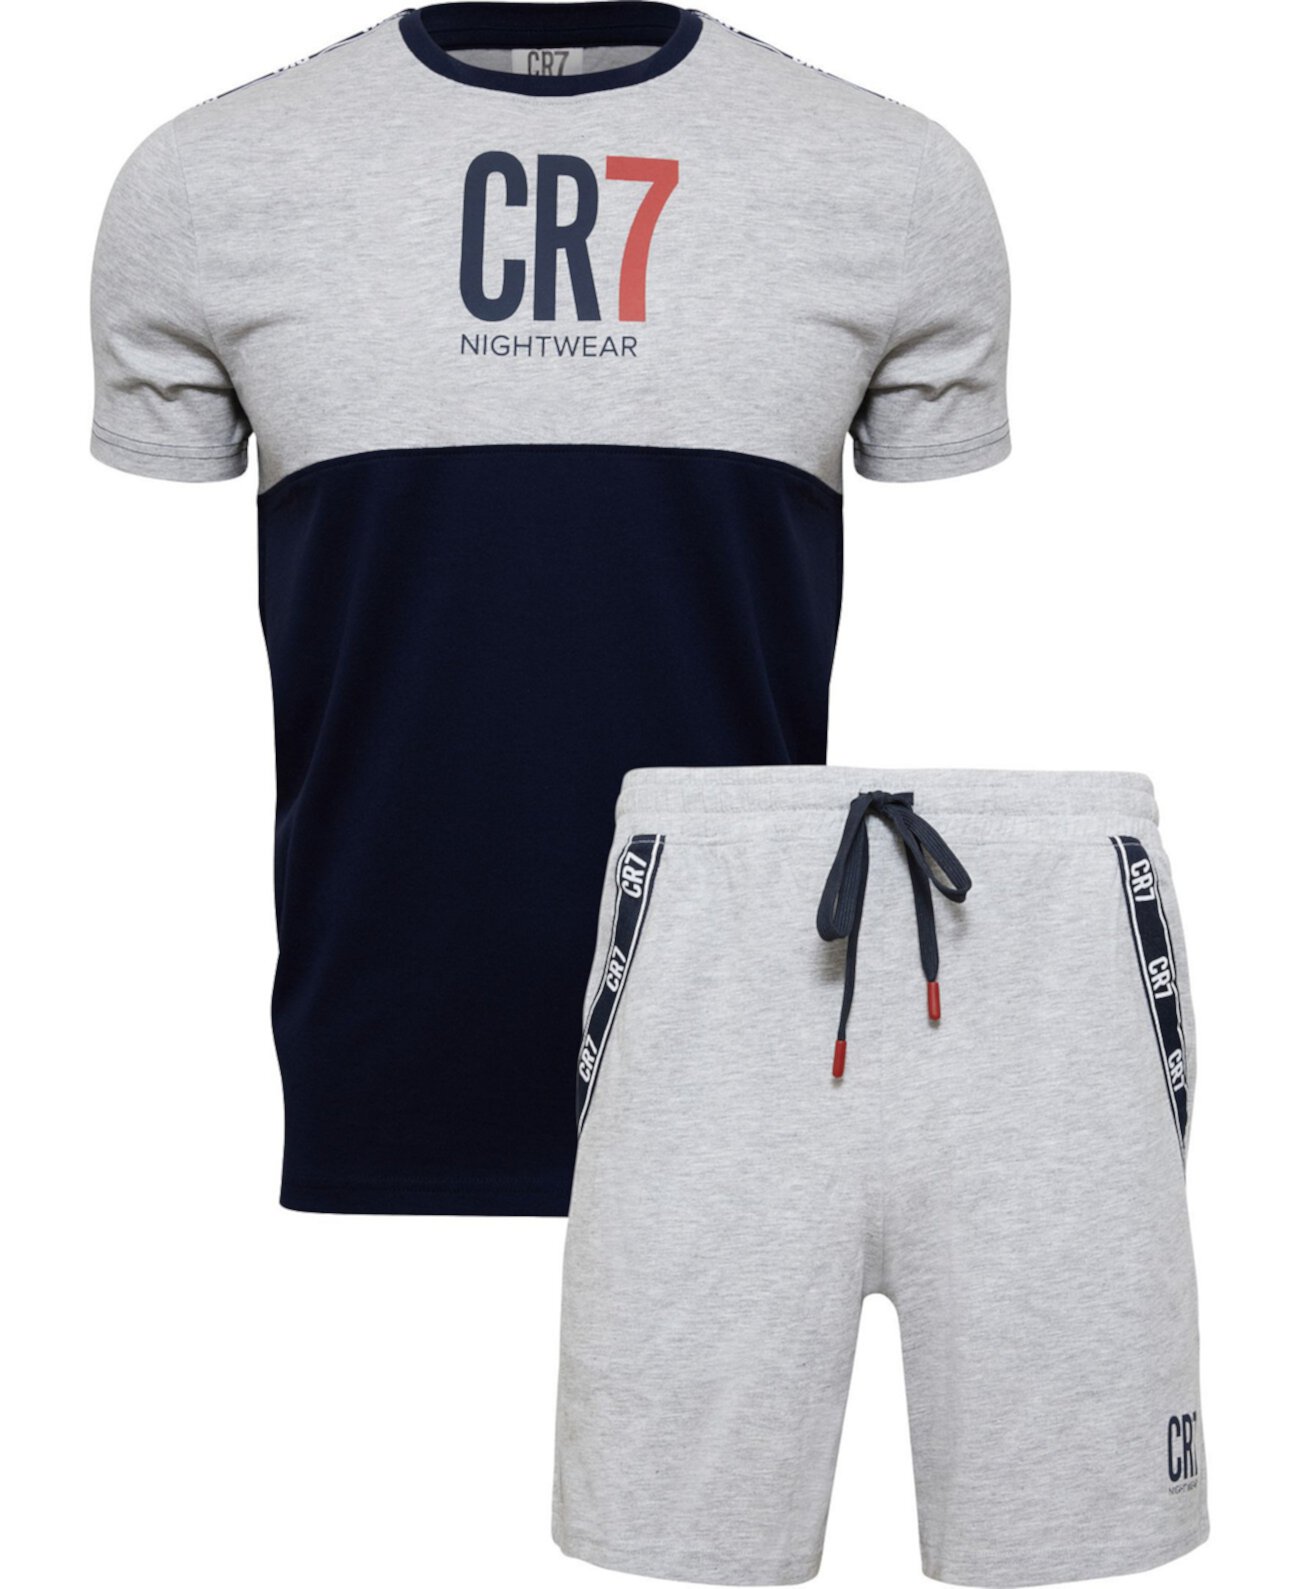 Мужская одежда для отдыха, комплект из футболки и шорт CR7